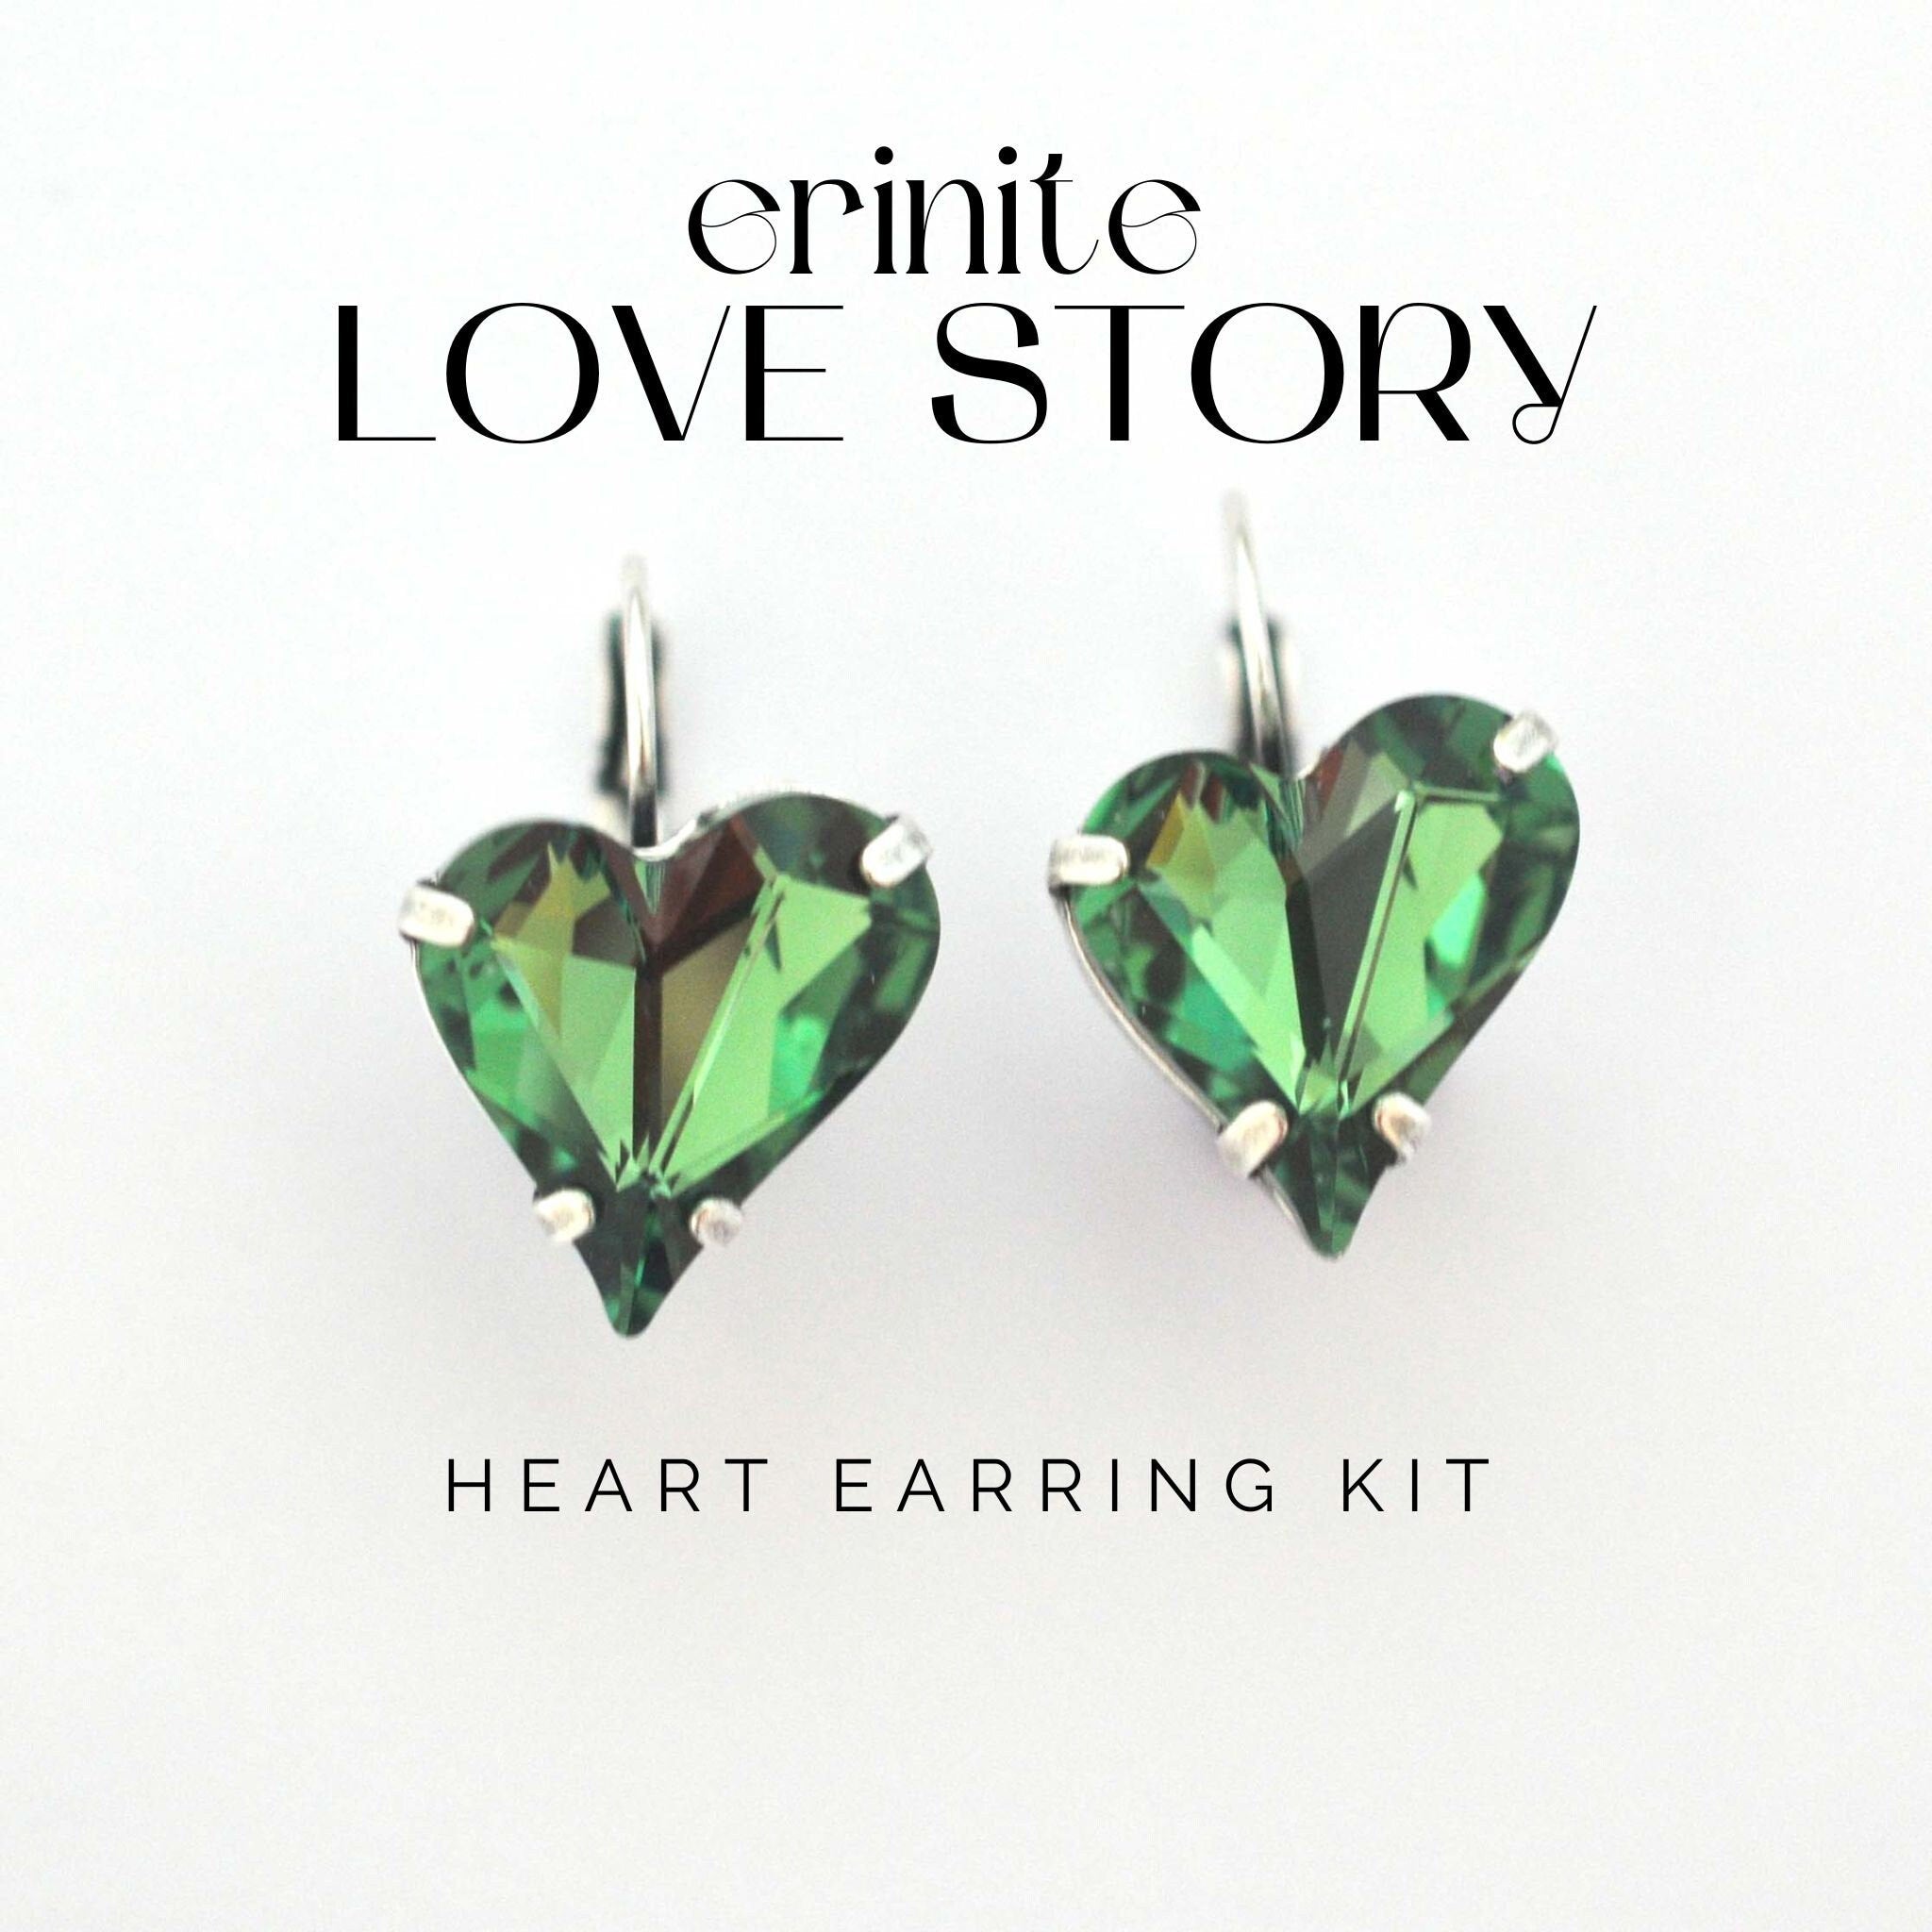 Erinite Love Story Earring Kit - 1 Earring Kit